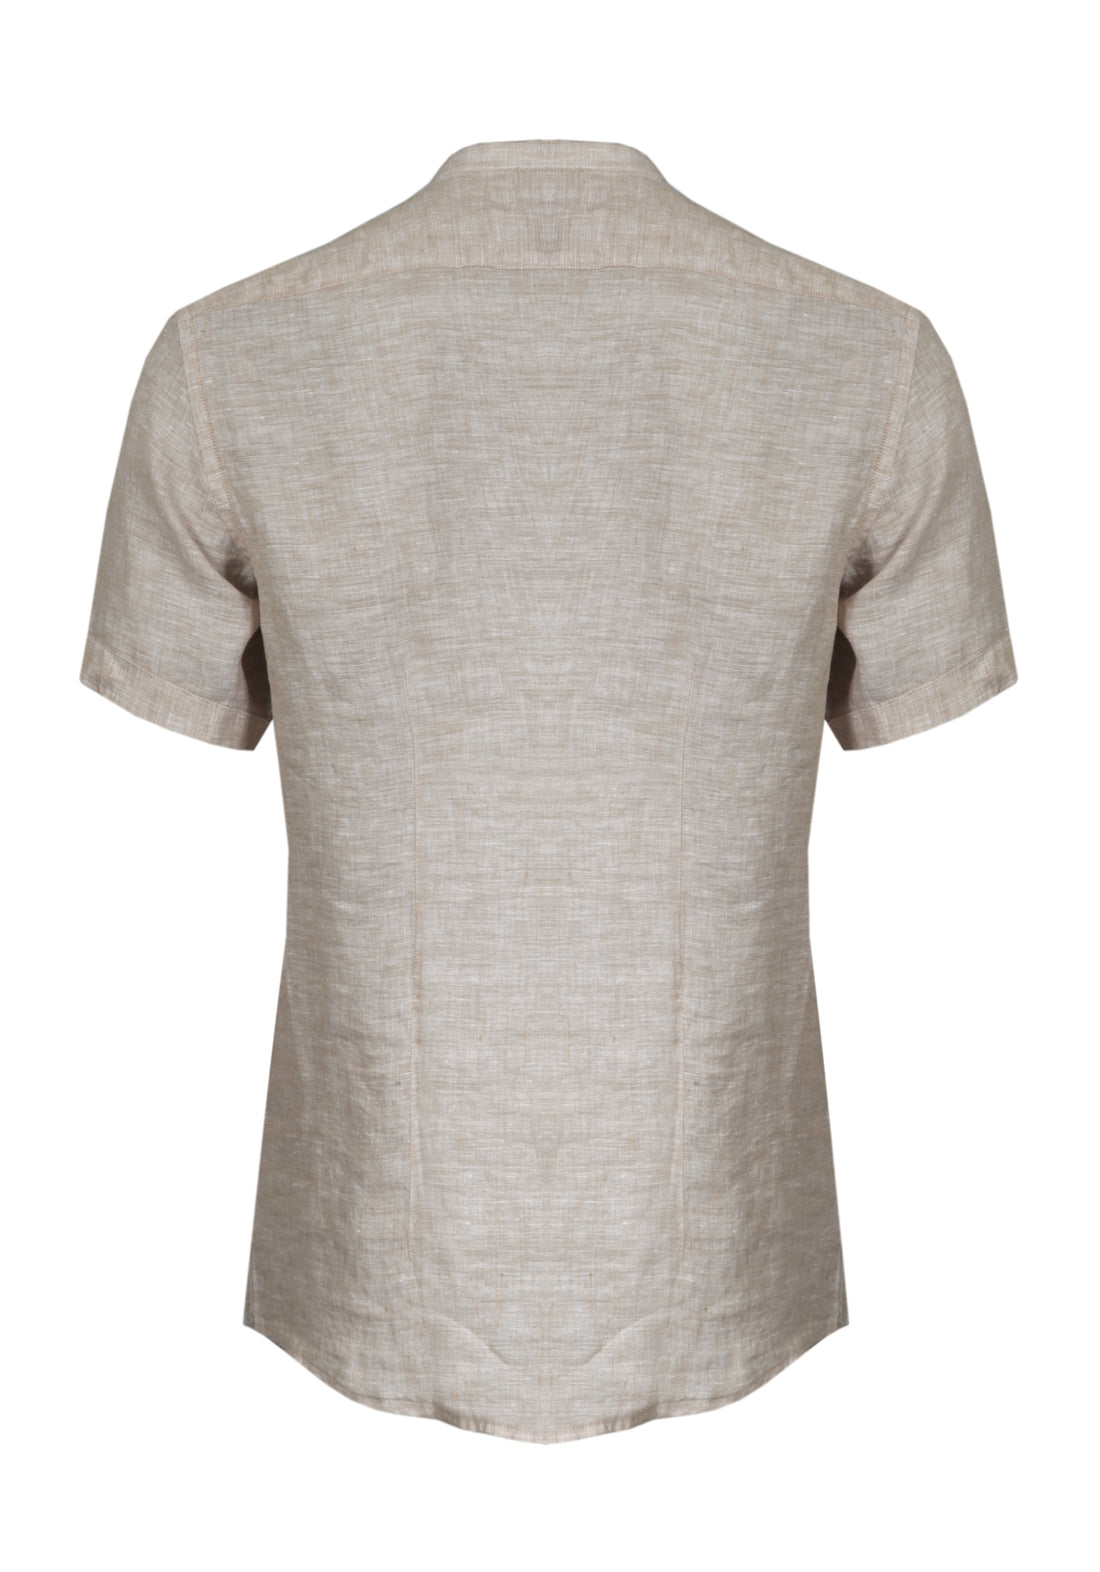 Half Sleeve Korean Linen Shirt - Ecru